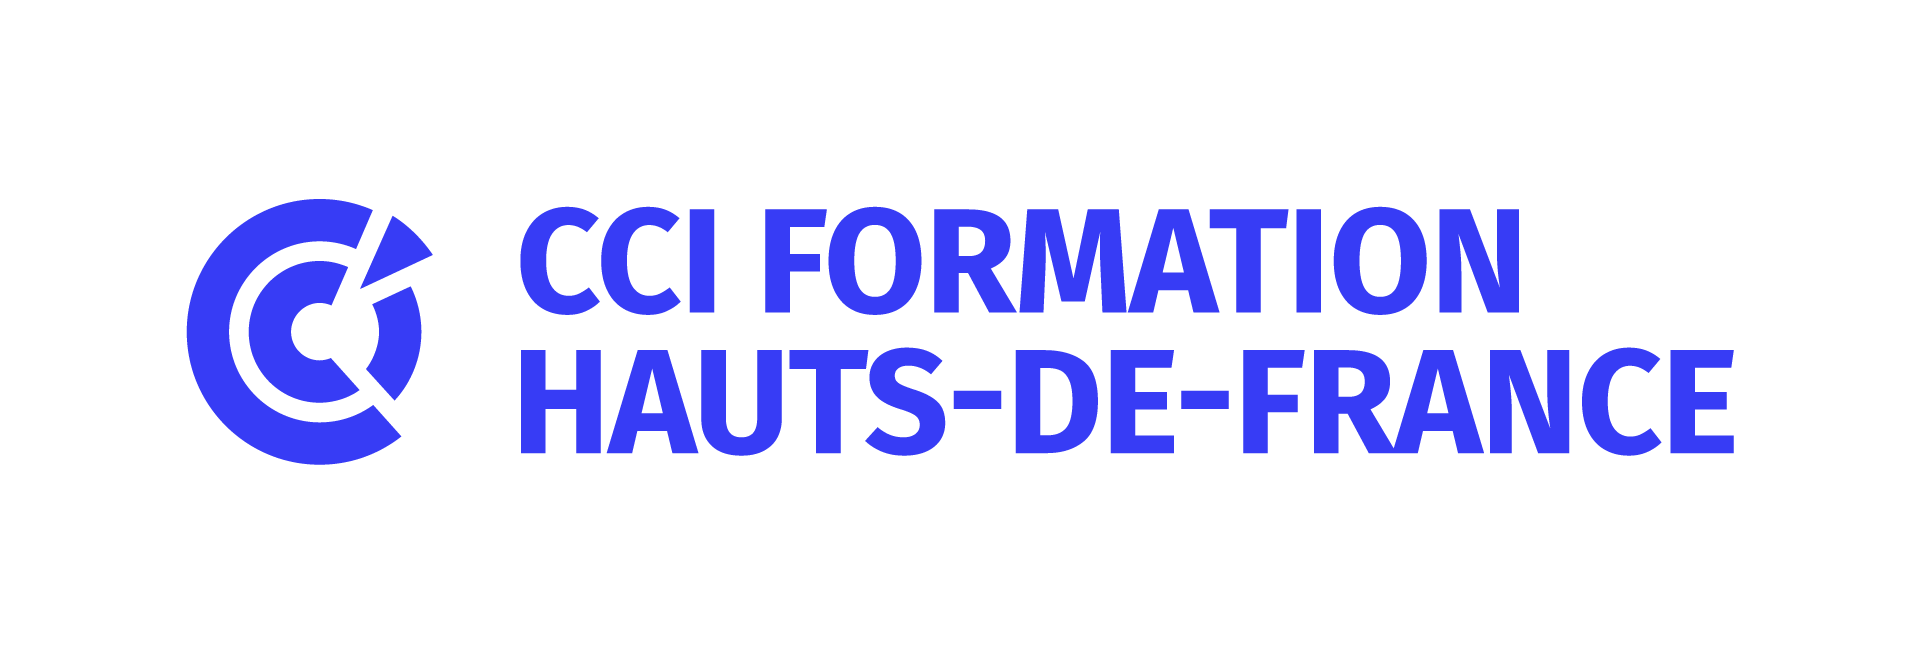 CCI Formation logo